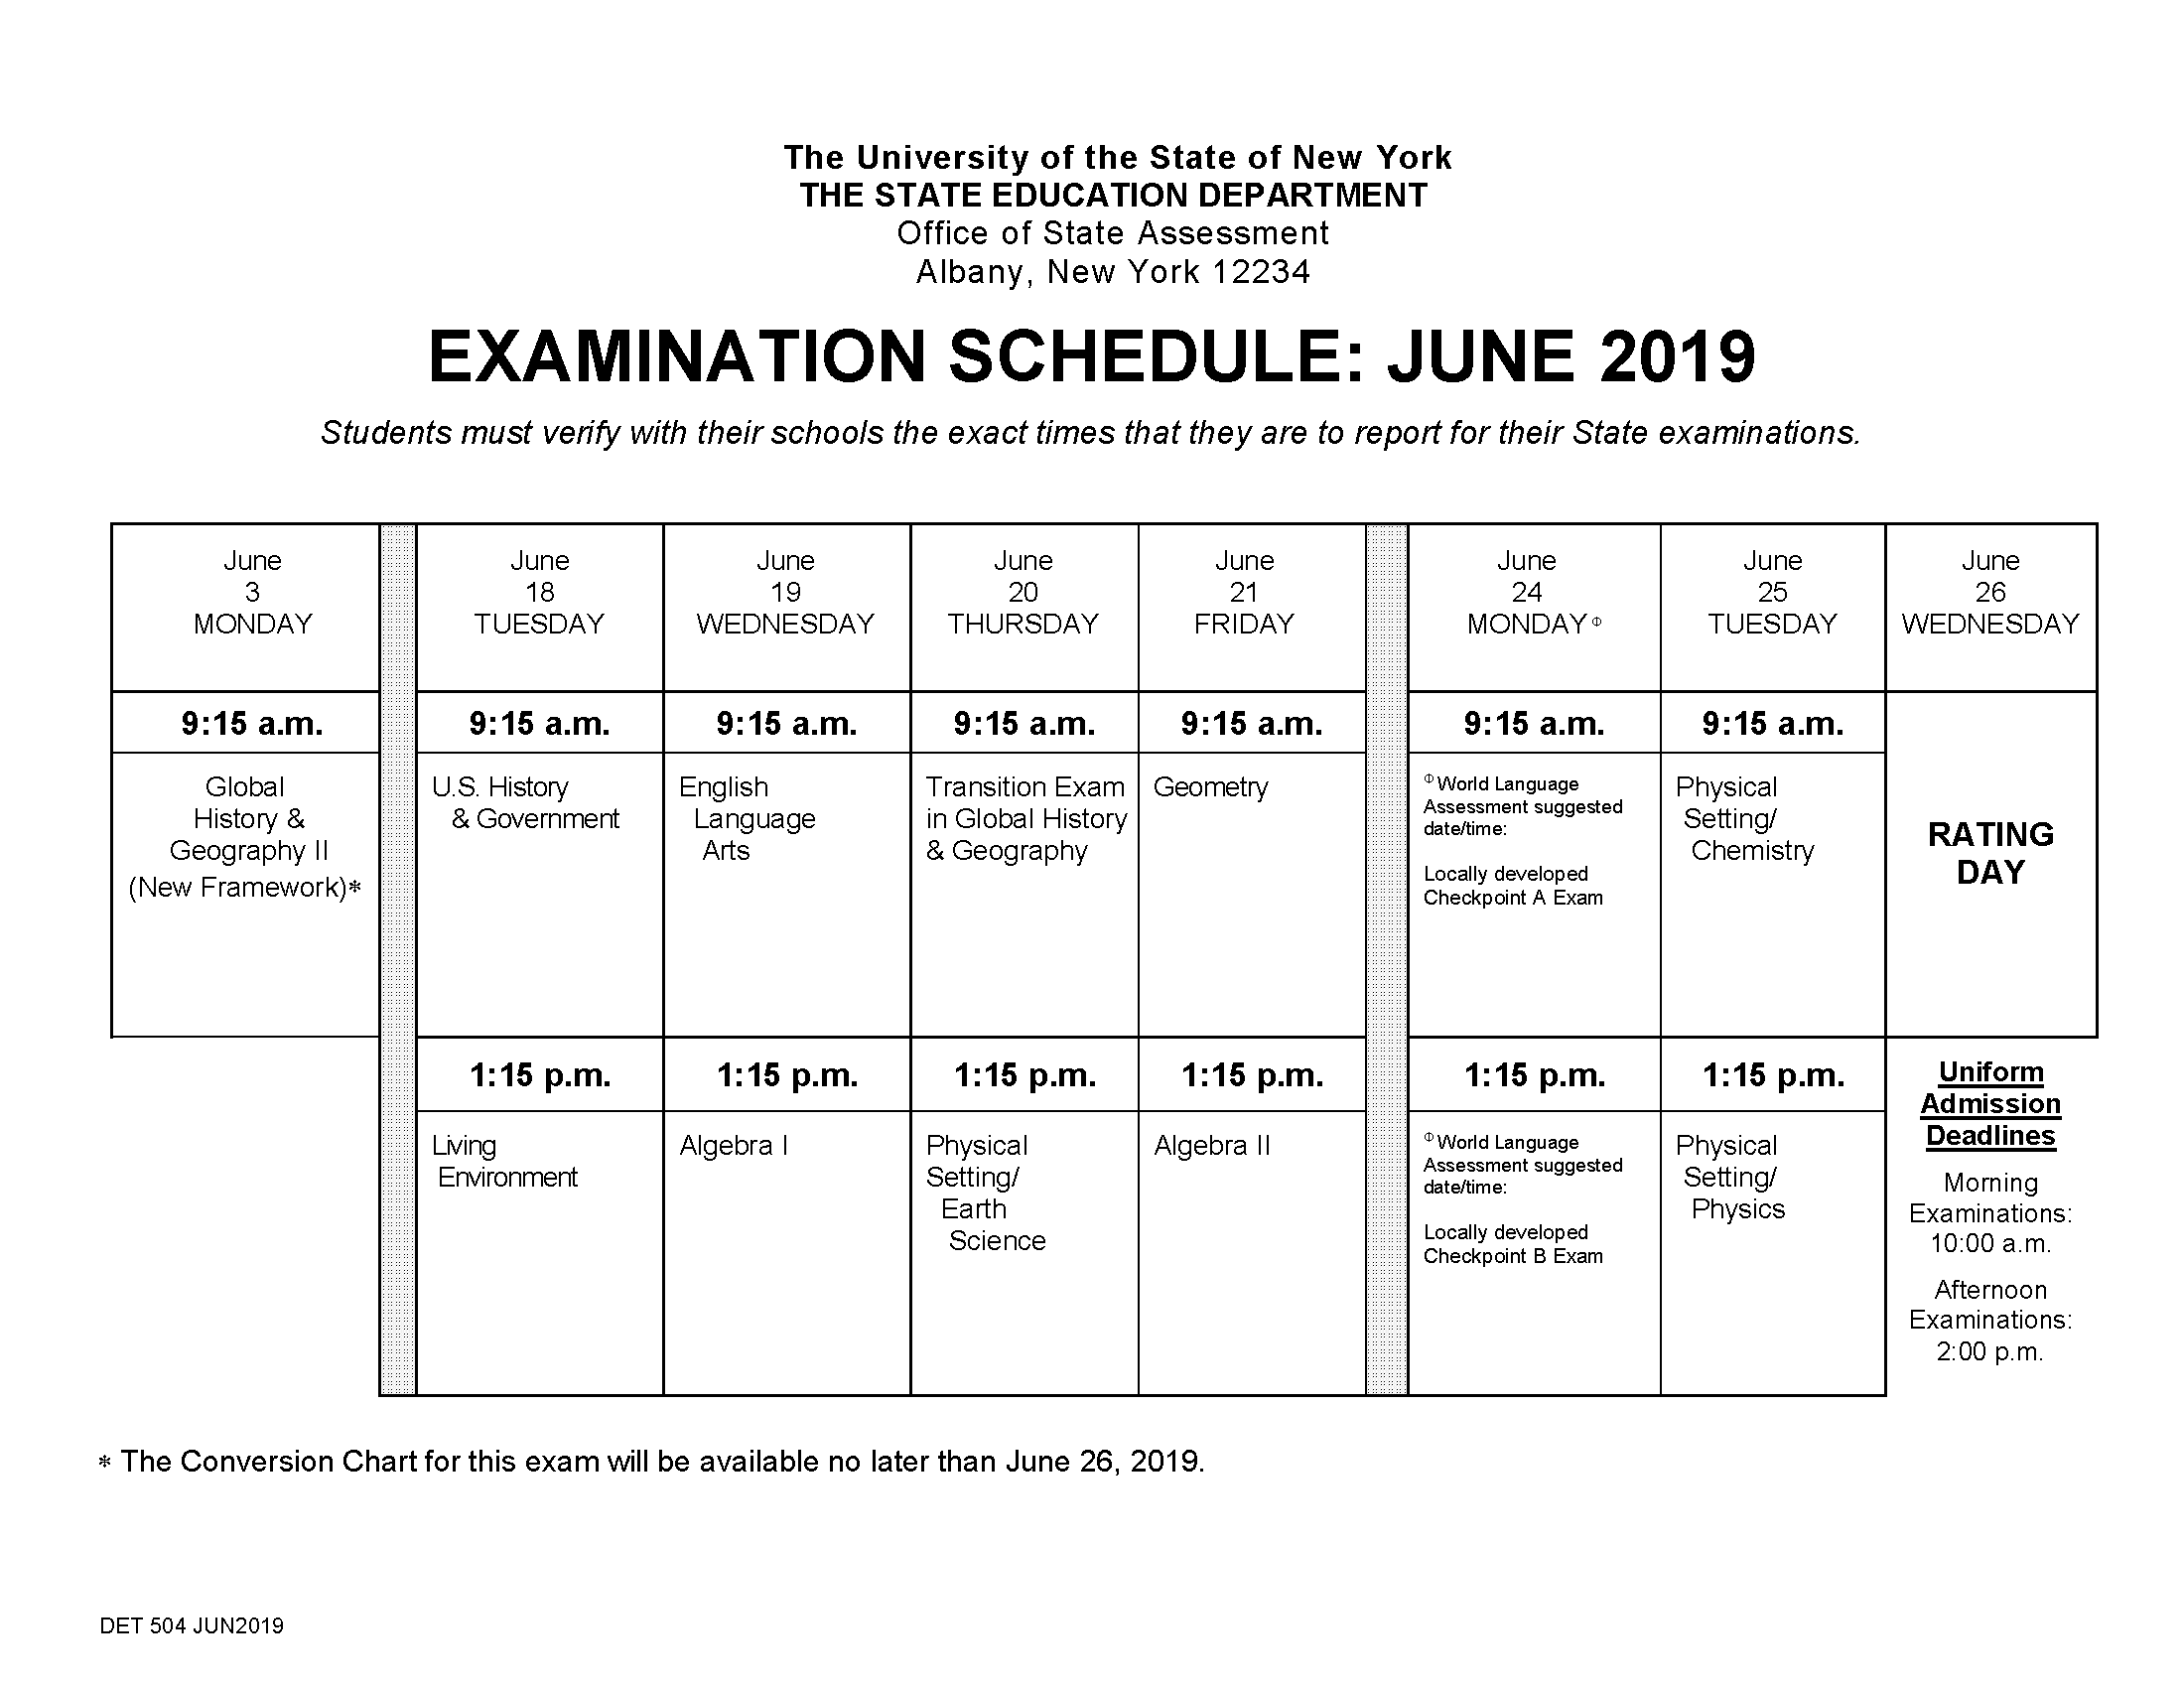 Regents exam schedule for June 2019